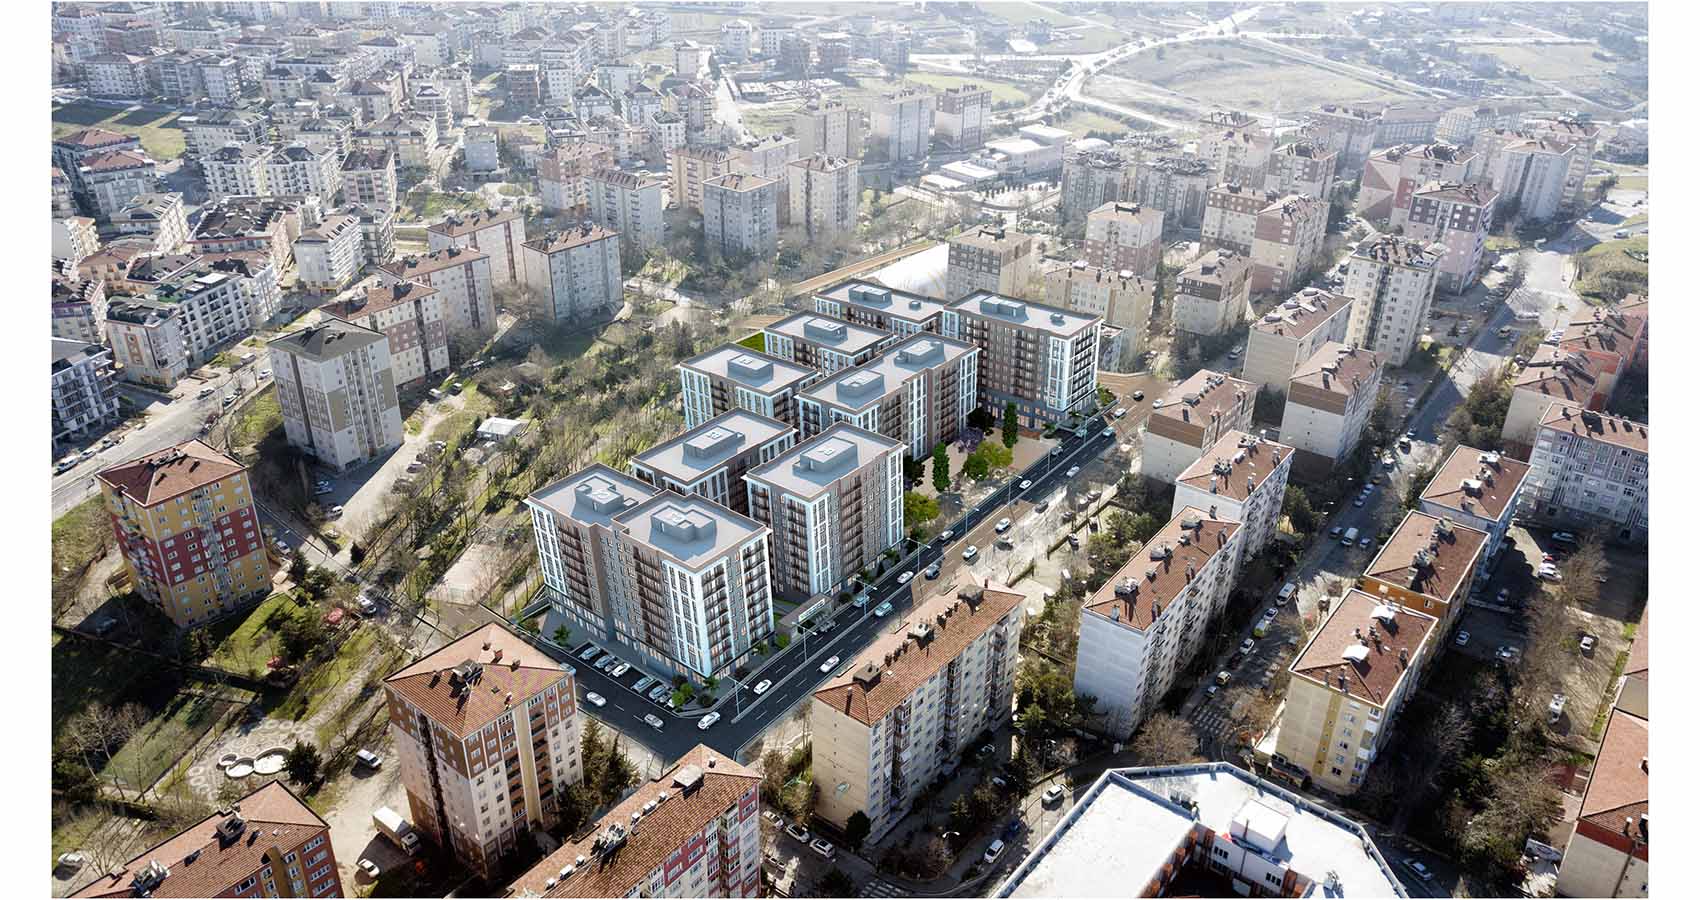 K.E project centrally located Istanbul/Beylikduzu